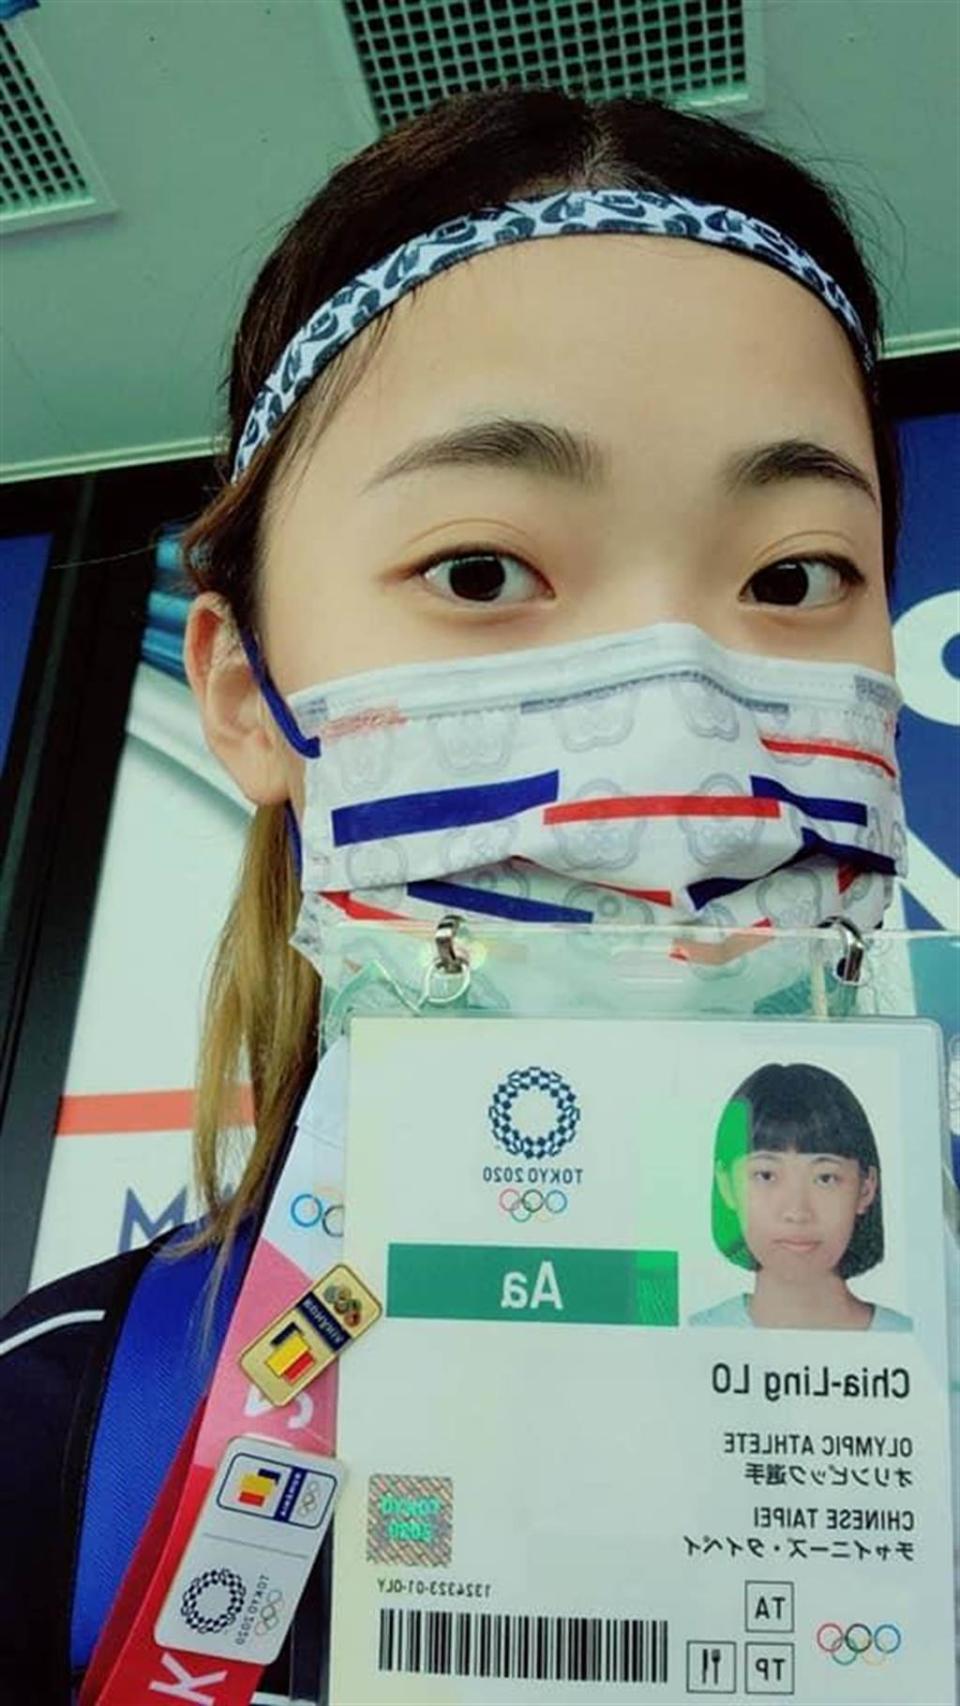 羅嘉翎秀出2020東京奧運選手證。(圖/羅嘉翎LO Chia-Ling +0臉書)